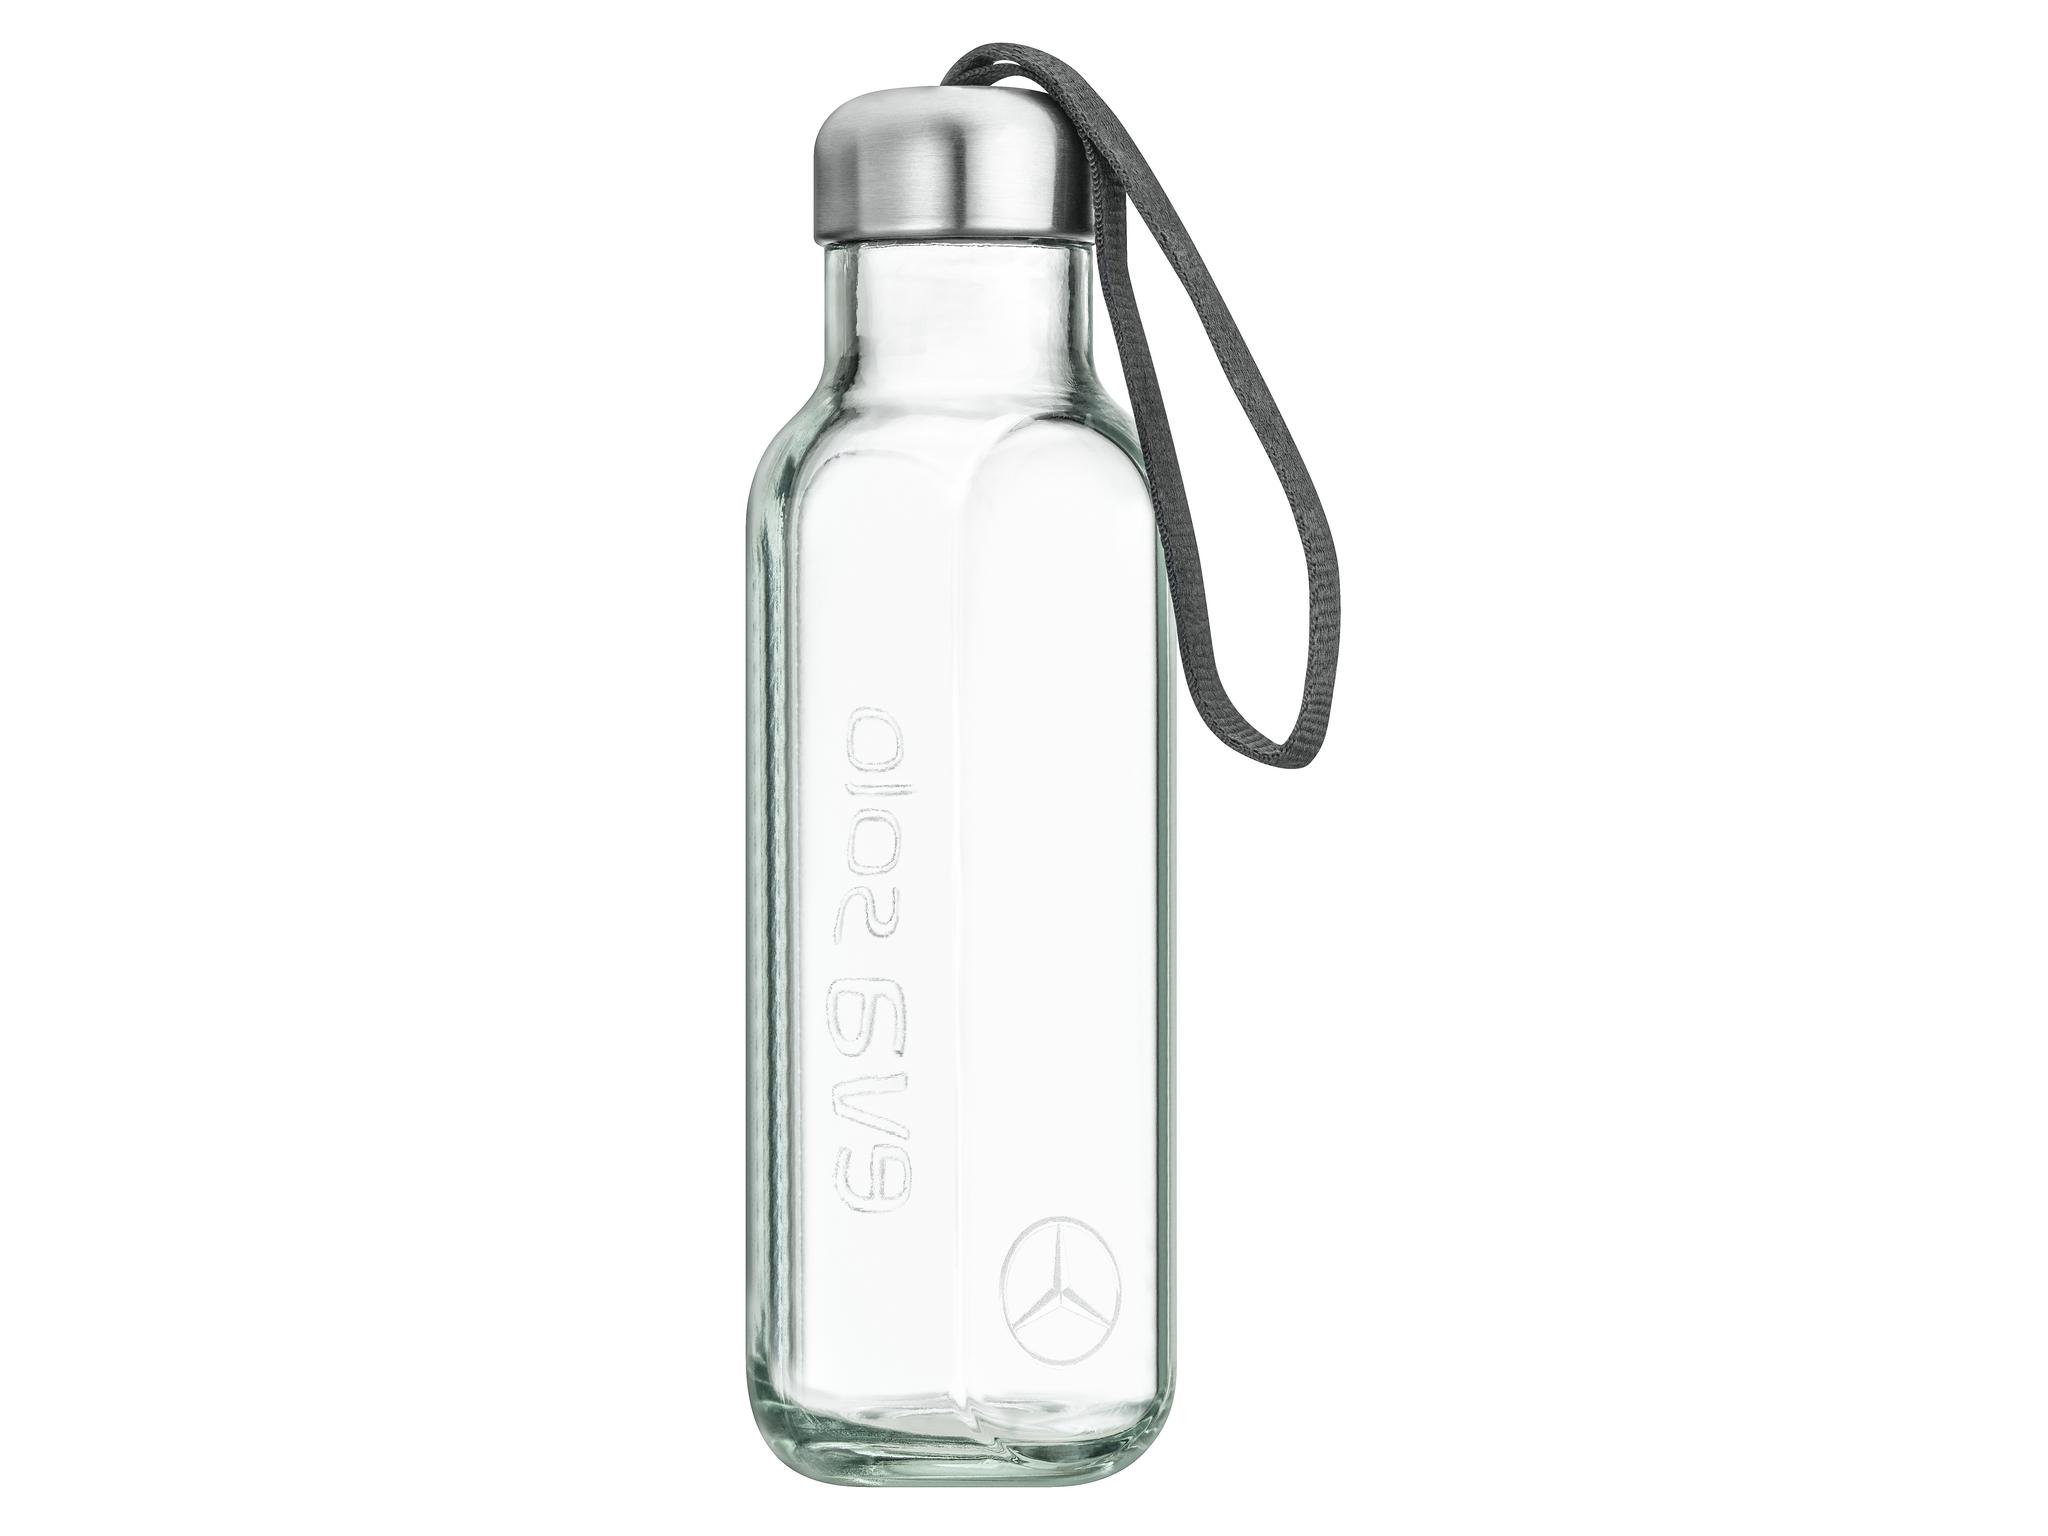 Glastrinkflasche, 0,5 l - Glas / Edelstahl / Kunststoff, eva solo